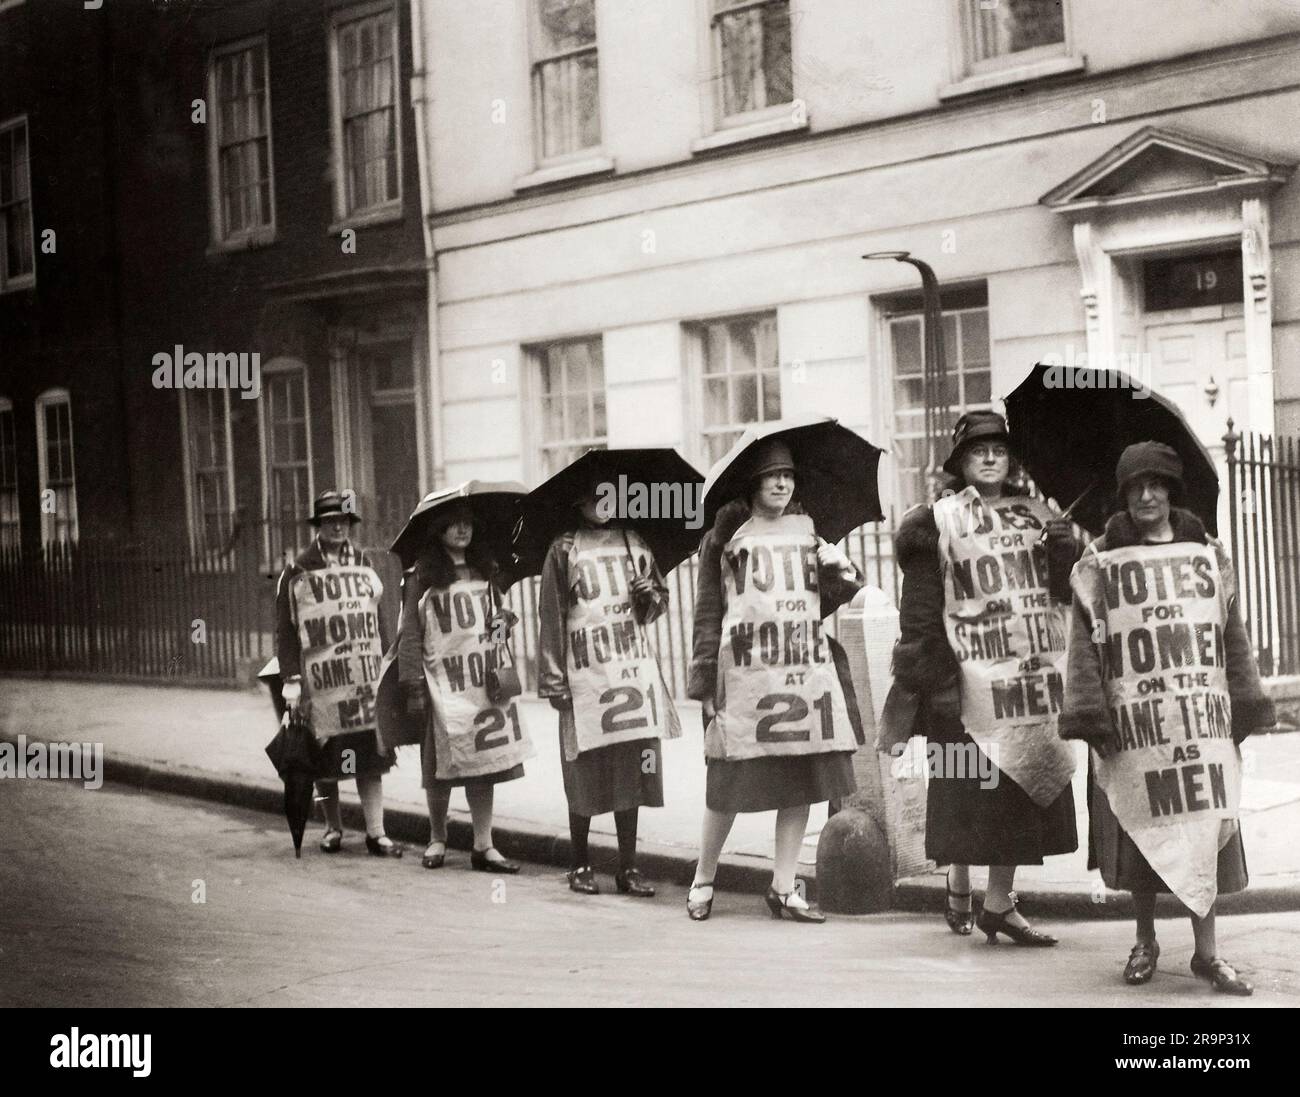 Un groupe de femmes portant des voix pour les femmes sur-robes dans le cadre du camouflage pour le suffrage des femmes. Banque D'Images